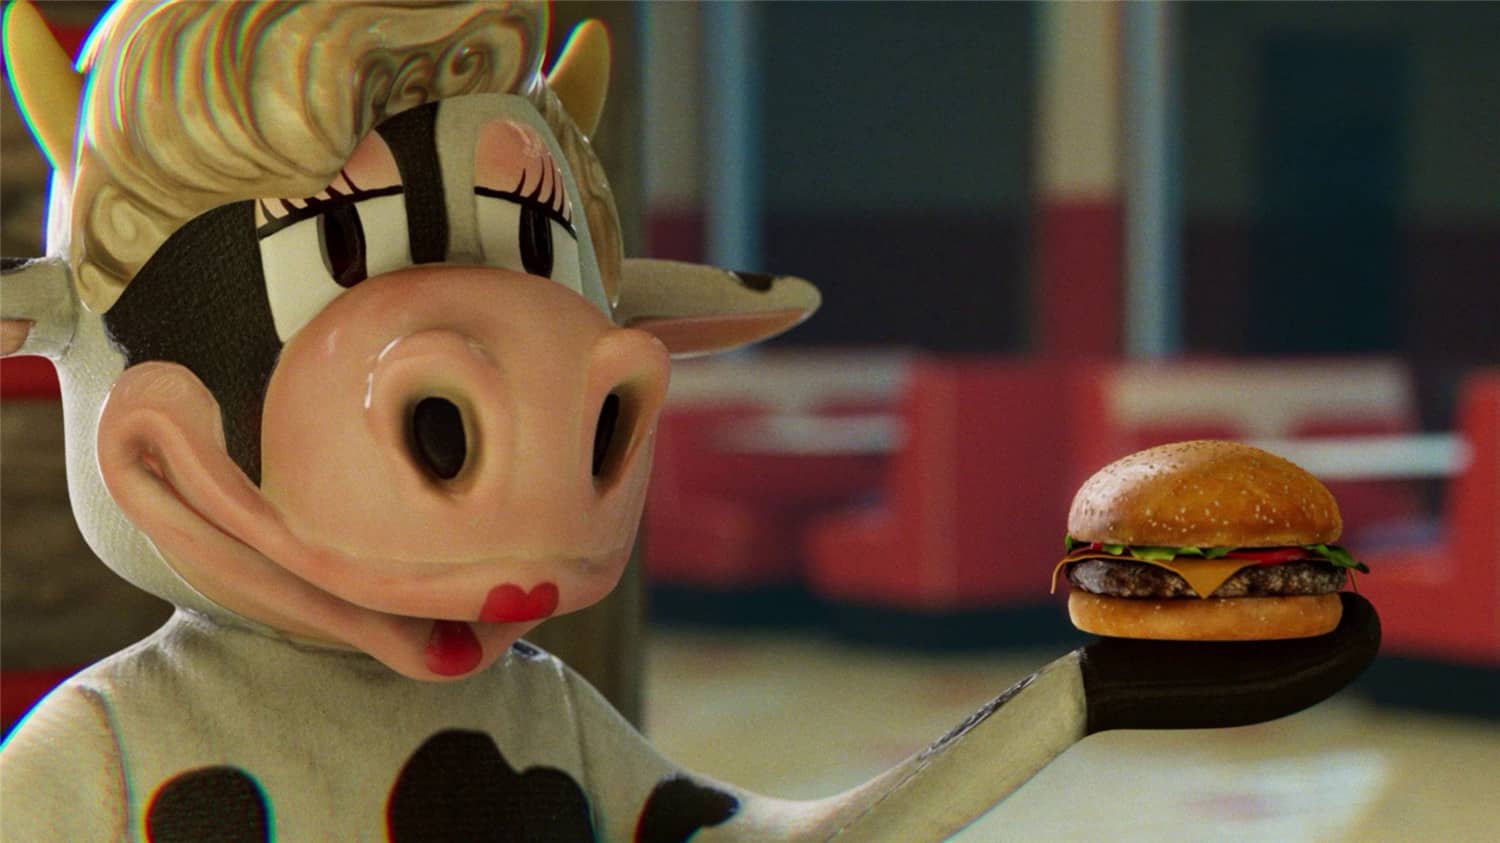 开心小汉堡庄/Happy's Humble Burger Farm-1